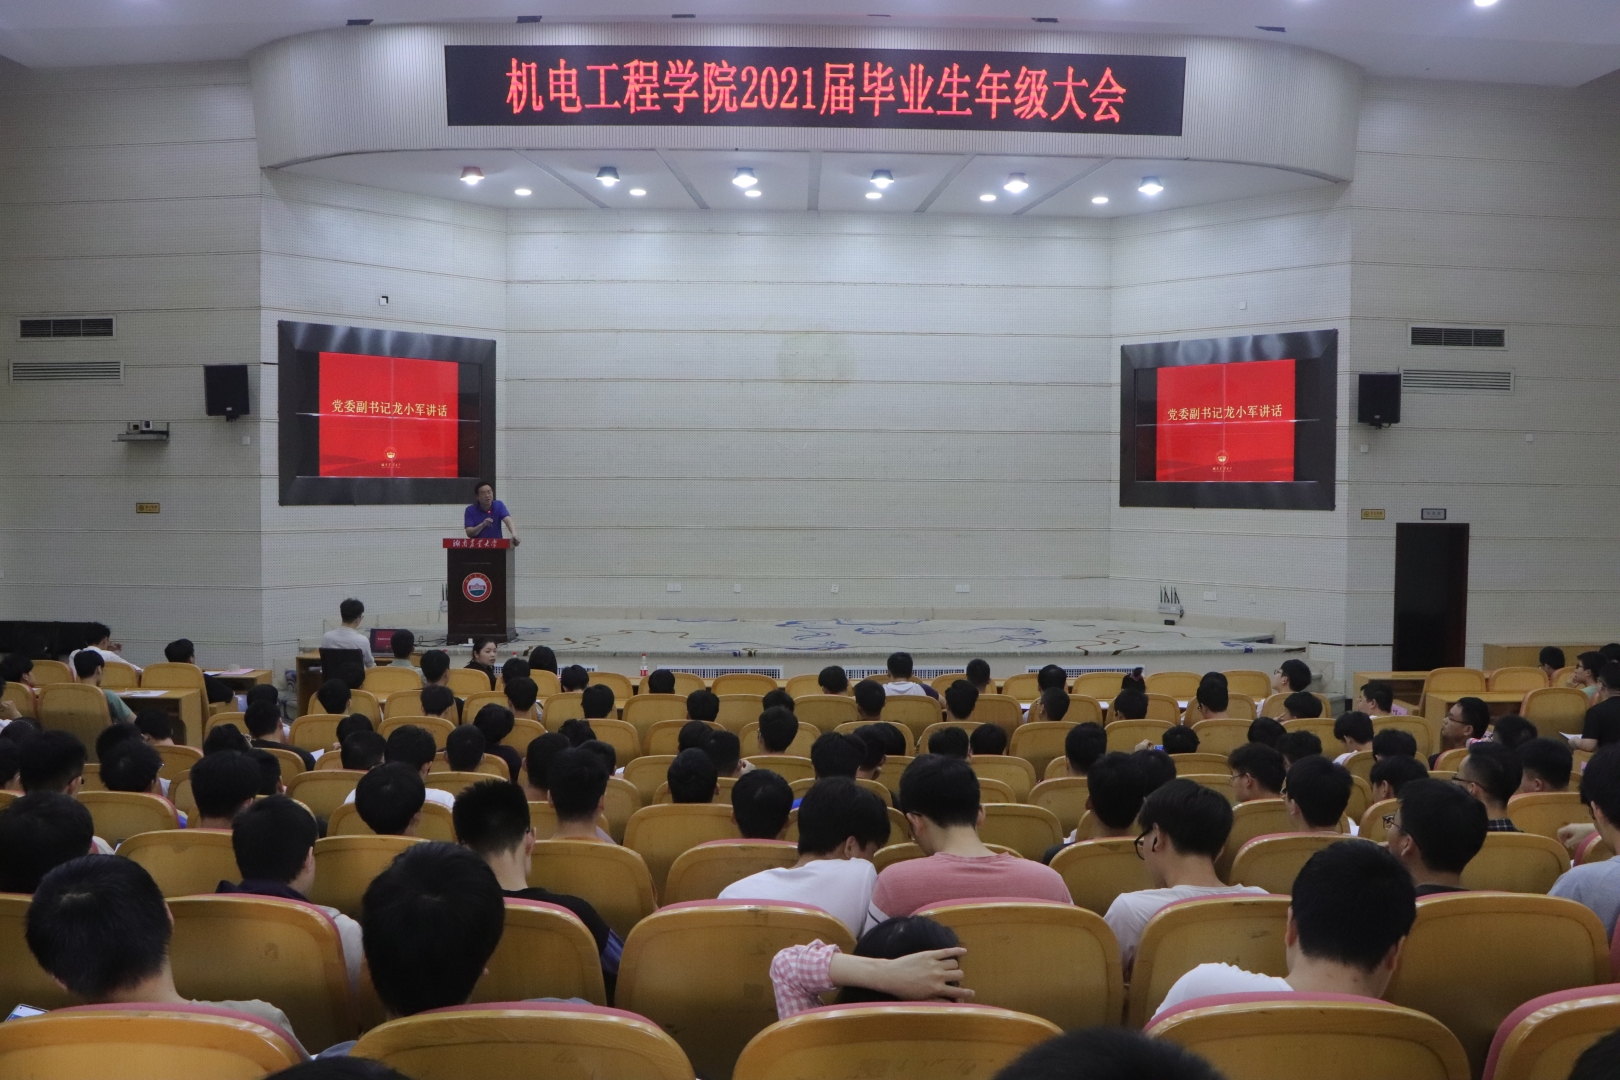 湖南农业大学机电工程学院成功举办2021届毕业生大会